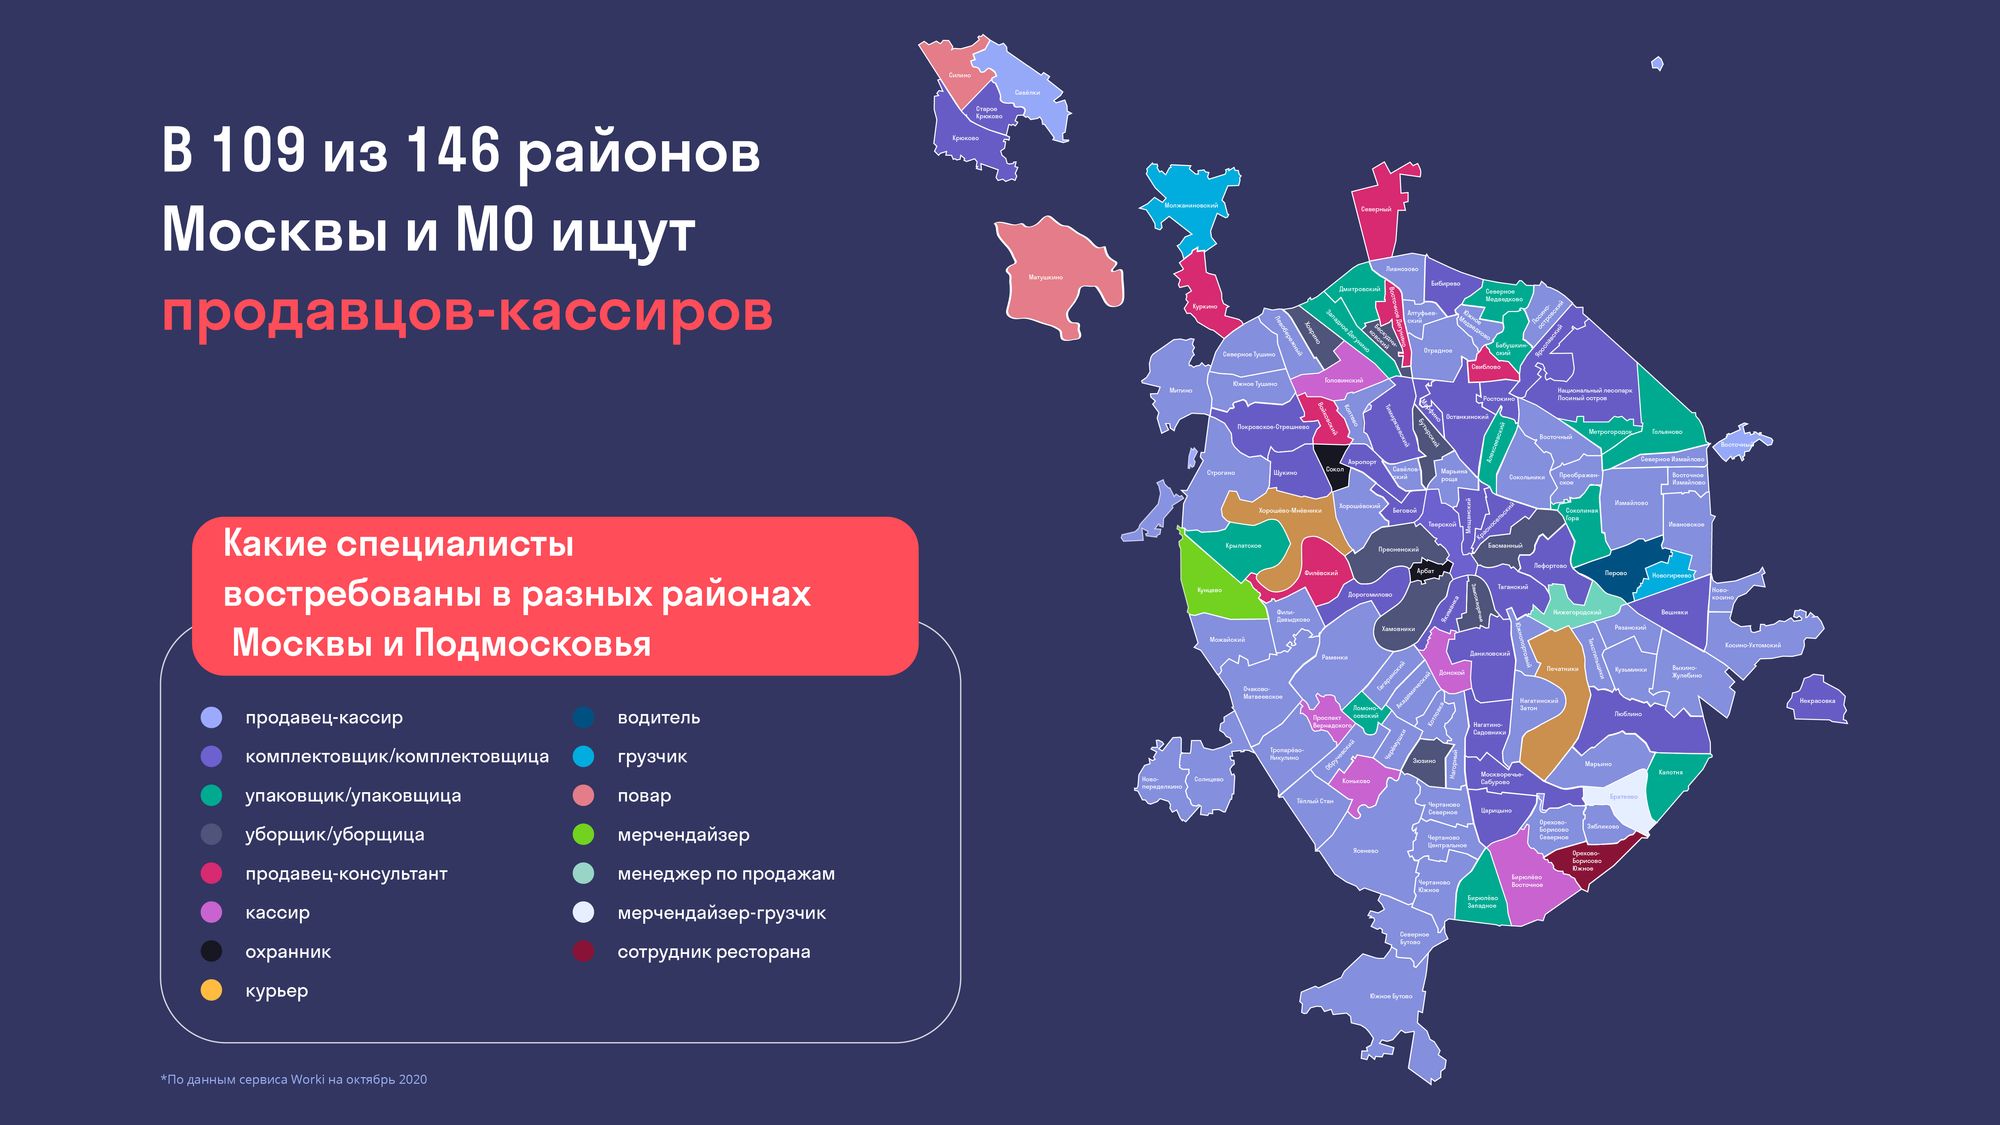 В москве есть район. Районы Москвы. Районы Москвы на карте. Районы Москвы по округам. Карта Москвы с районами и округами.